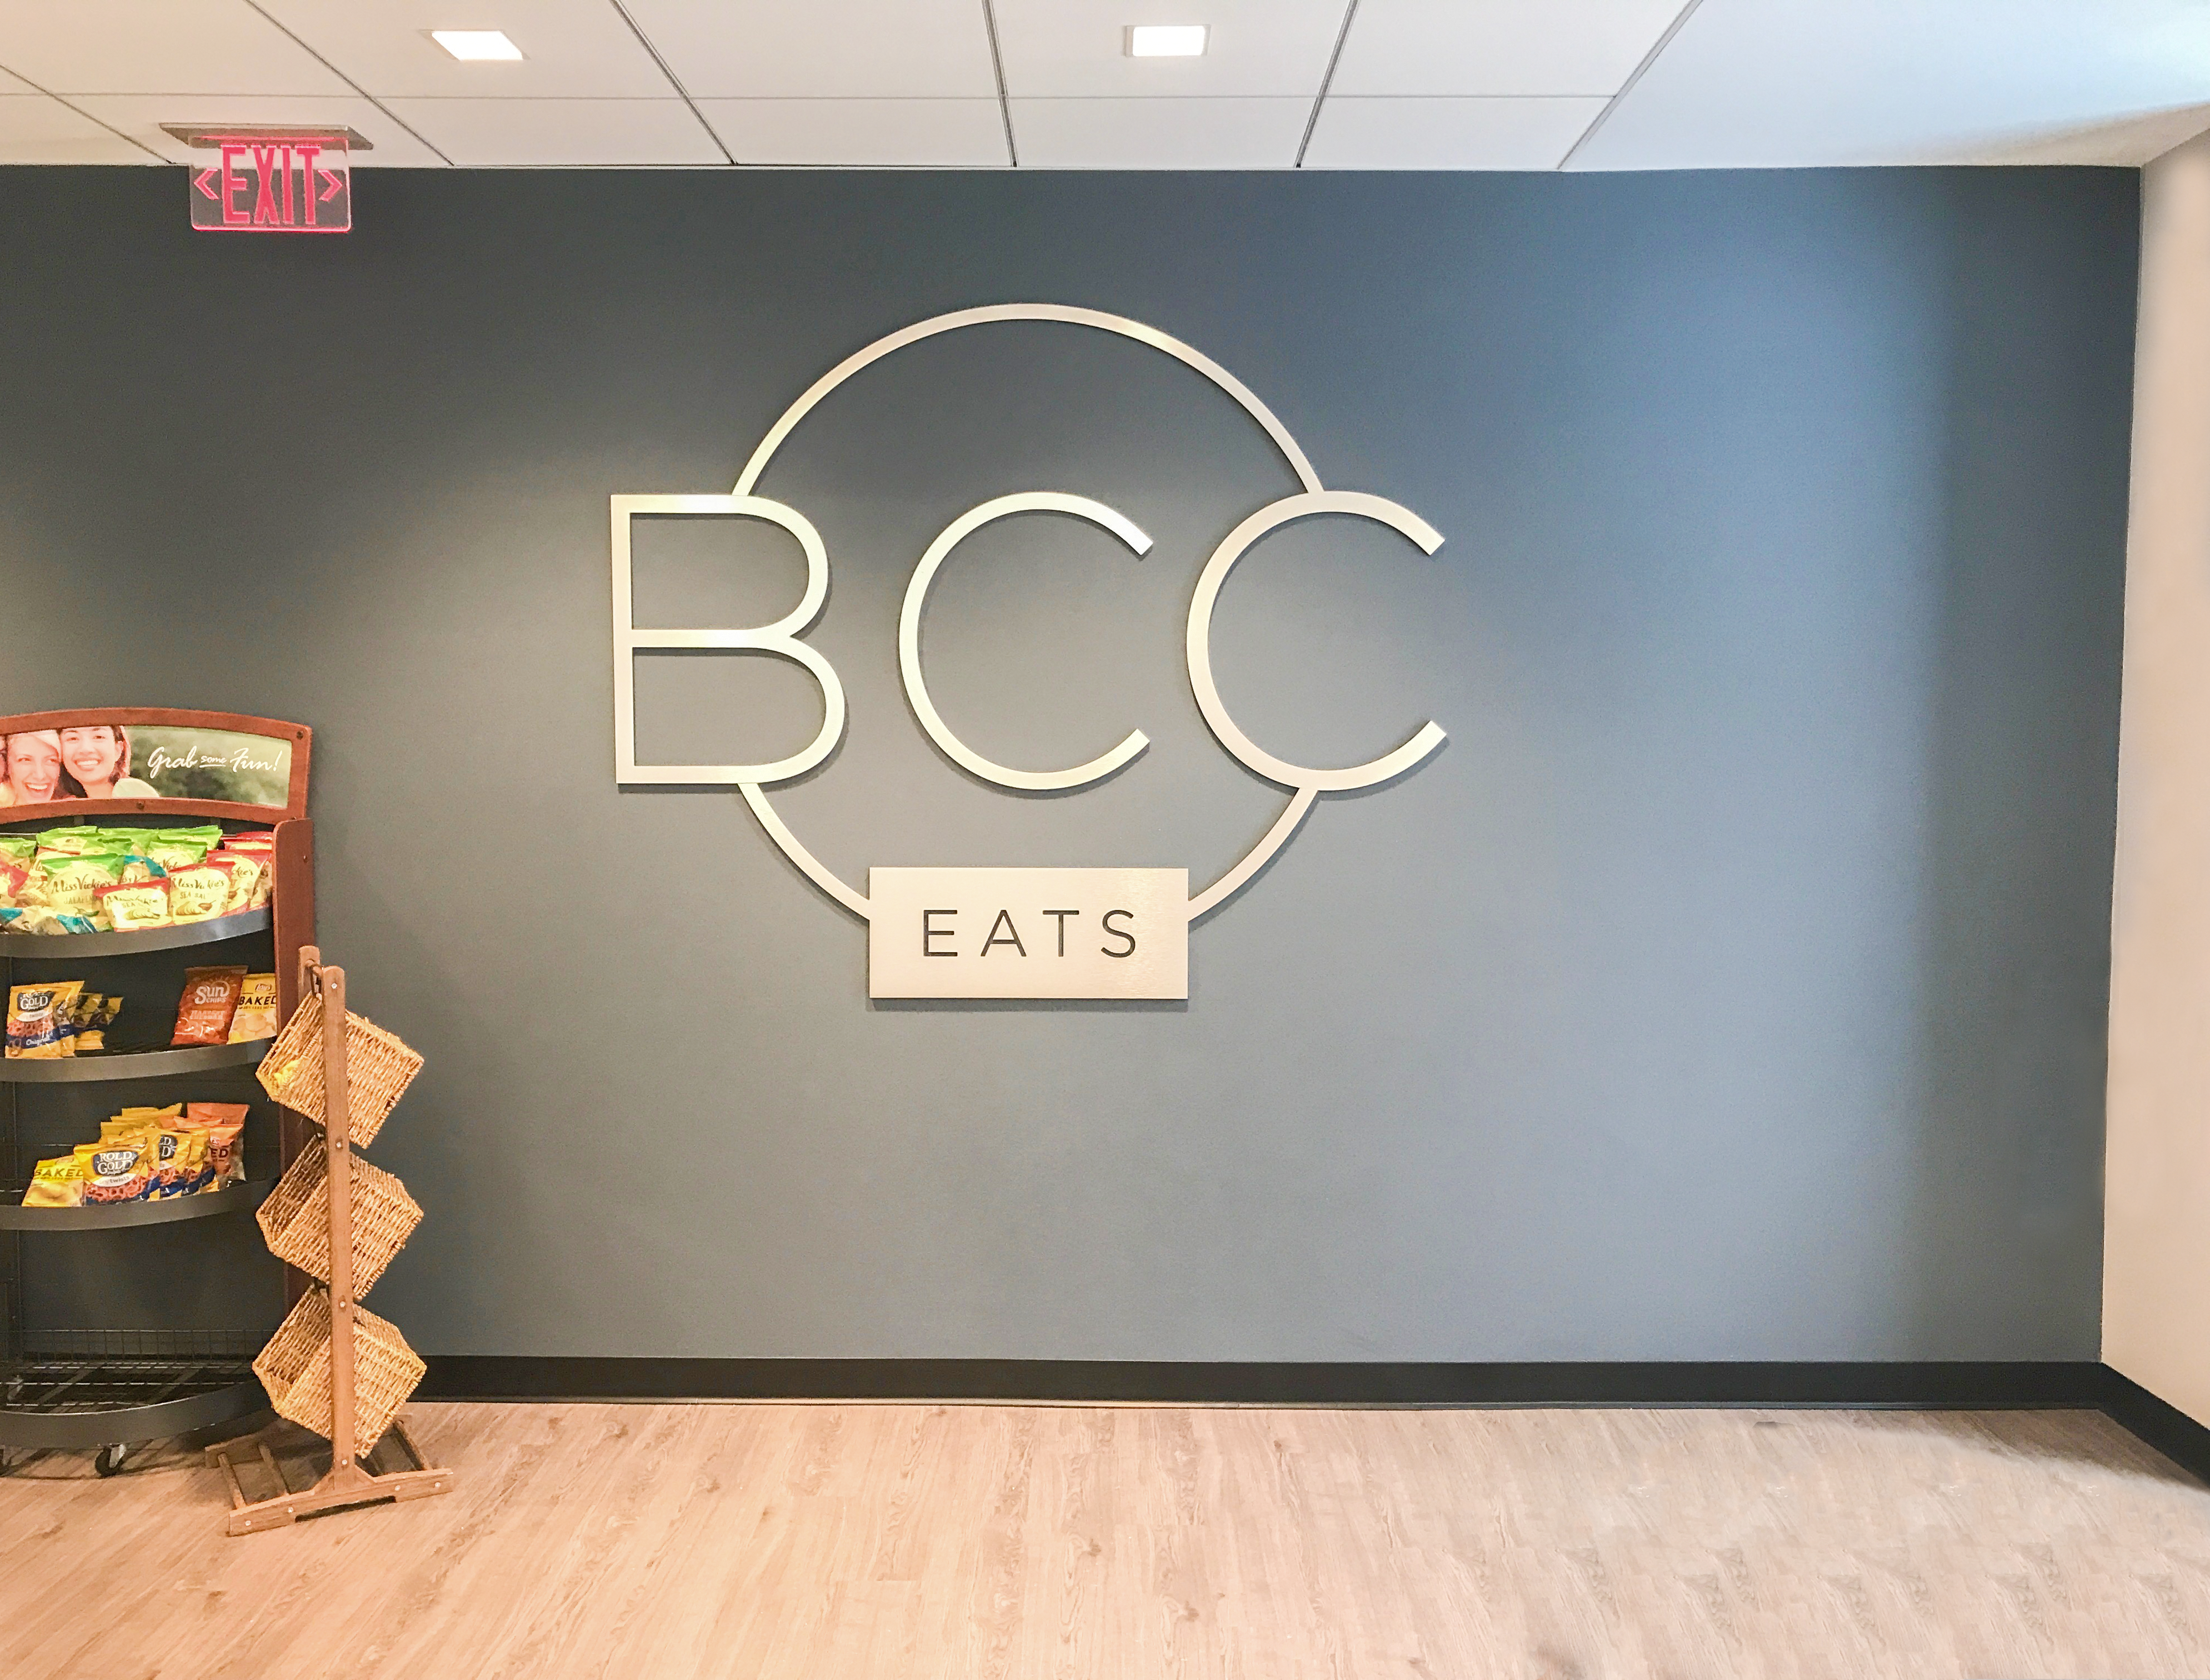 BCC Eats logo on wall signage